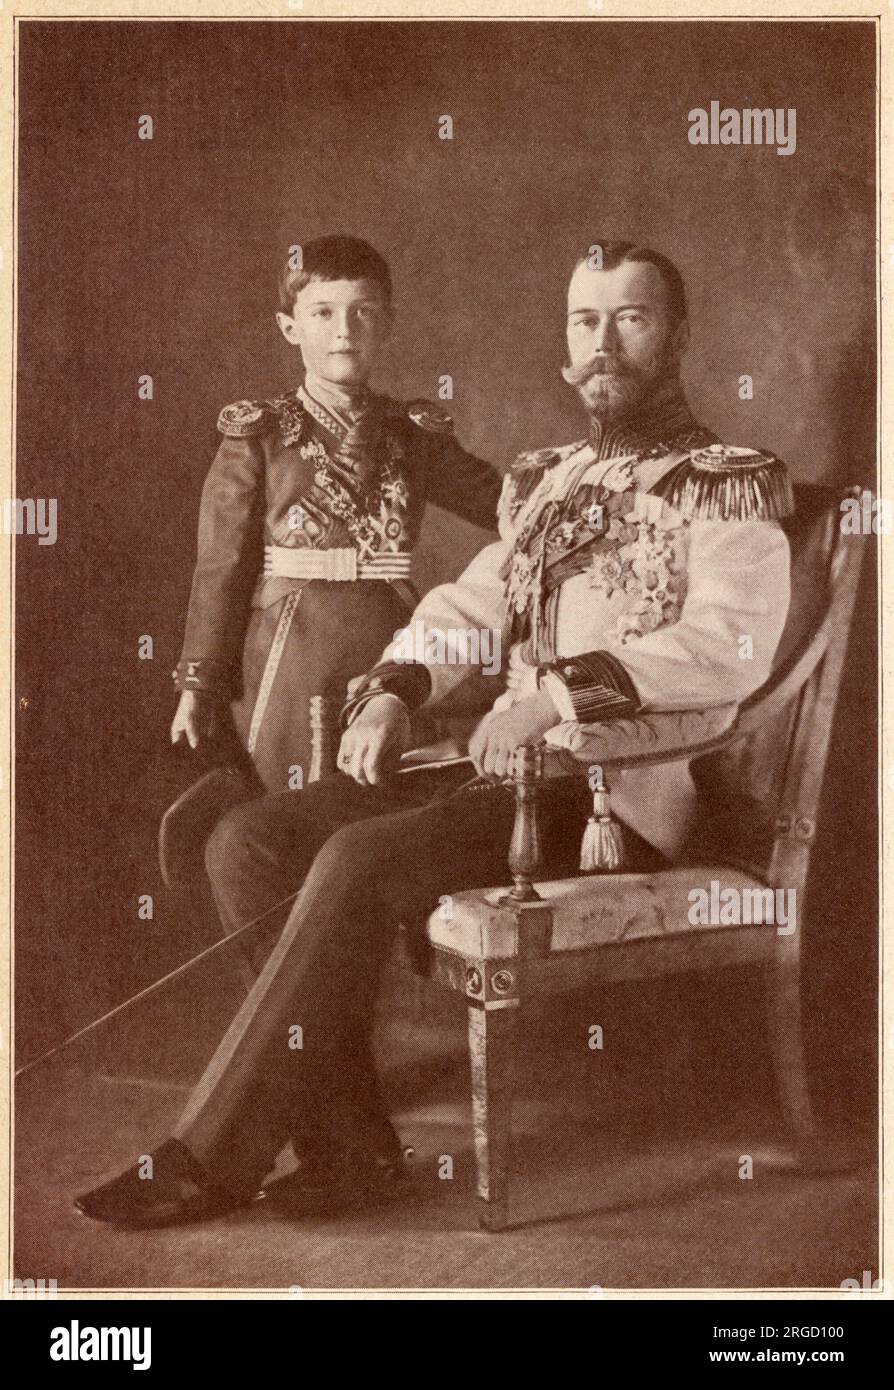 Russia - Zar Nicola II (1868-1918) l'ultimo imperatore della Russia, raffigurato con il suo unico figlio Alexei Nikolaevich (1904-1918), l'ultimo Tsarevich (erede apparente al trono dell'Impero russo). Foto Stock